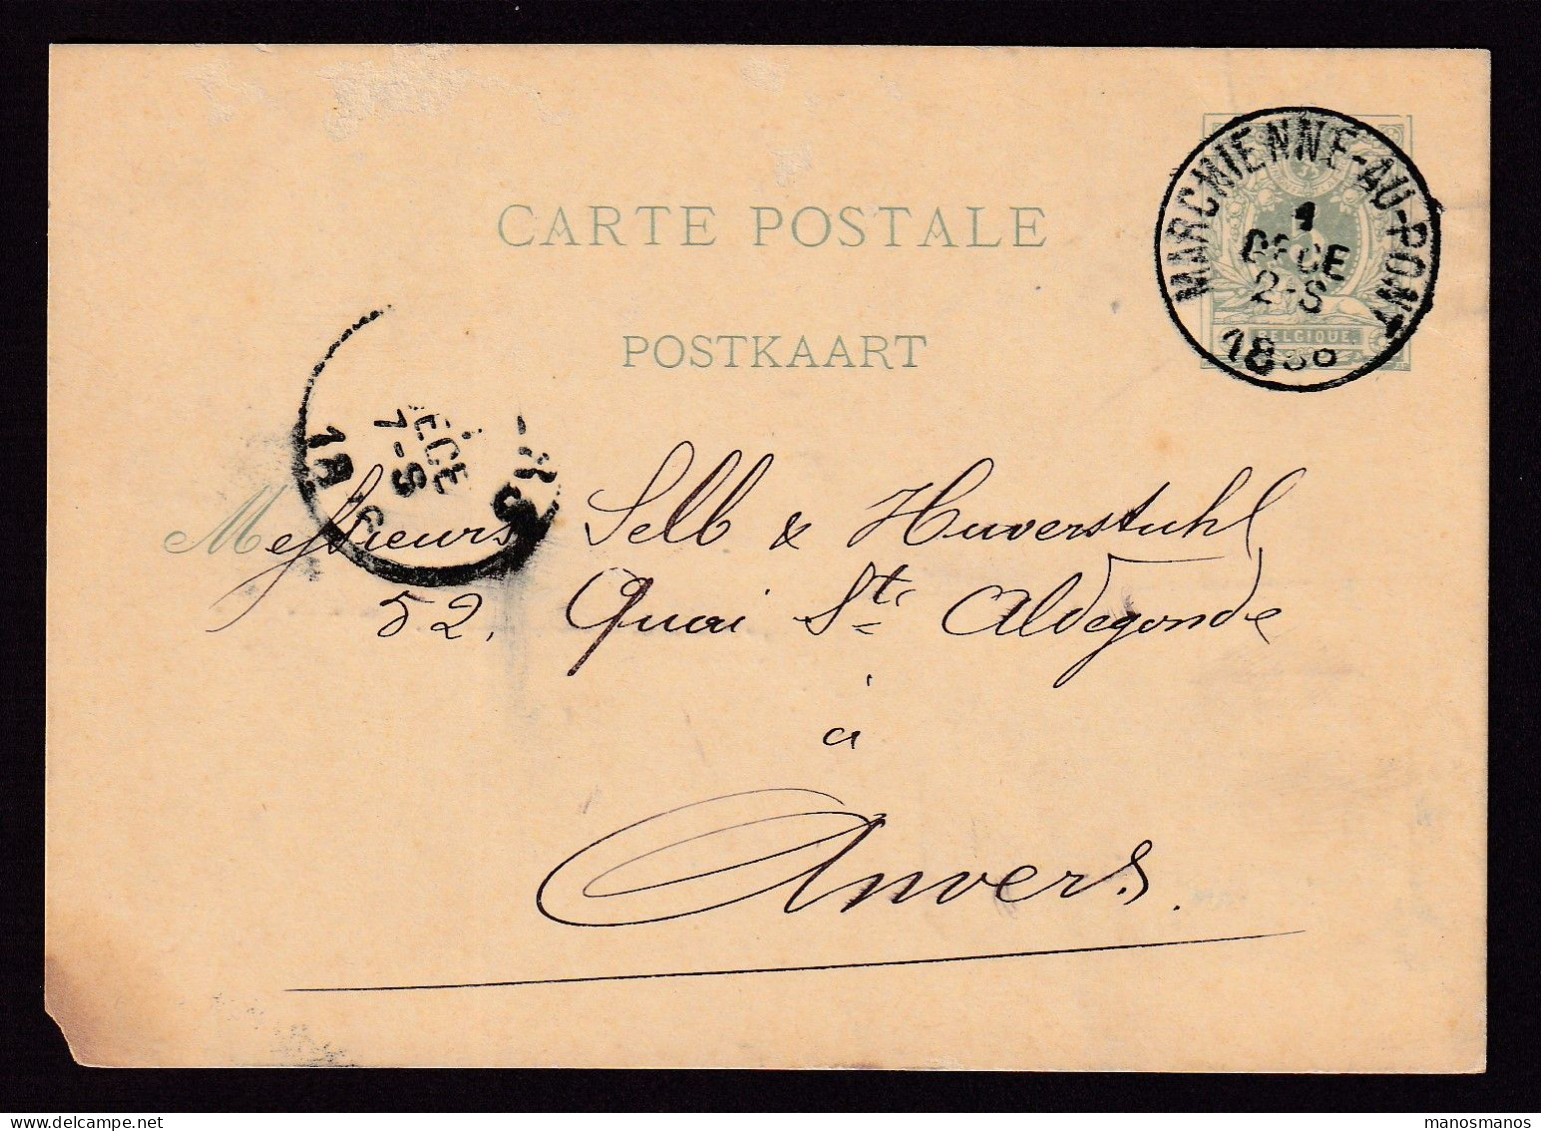 DDFF 529 - Entier Lion Couché MARCHIENNE AU PONT 1886 - Cachet S.A. Des Forges Et Laminoirs De MONCEAU Sur SAMBRE - Postkarten 1871-1909